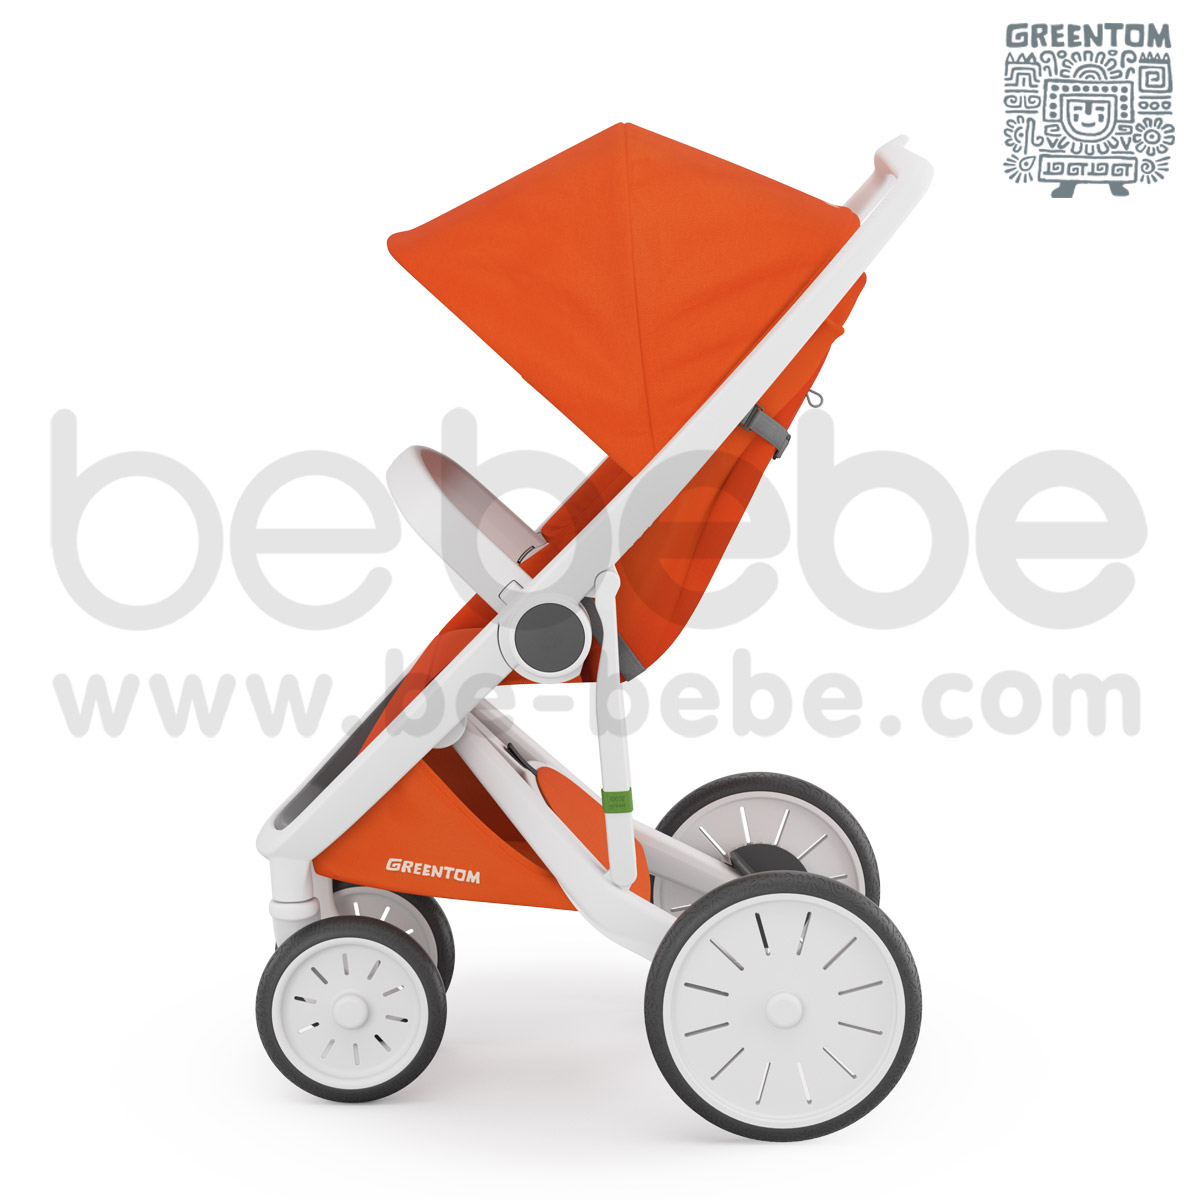 Greentom : Classic White Frame Stroller - Orange 